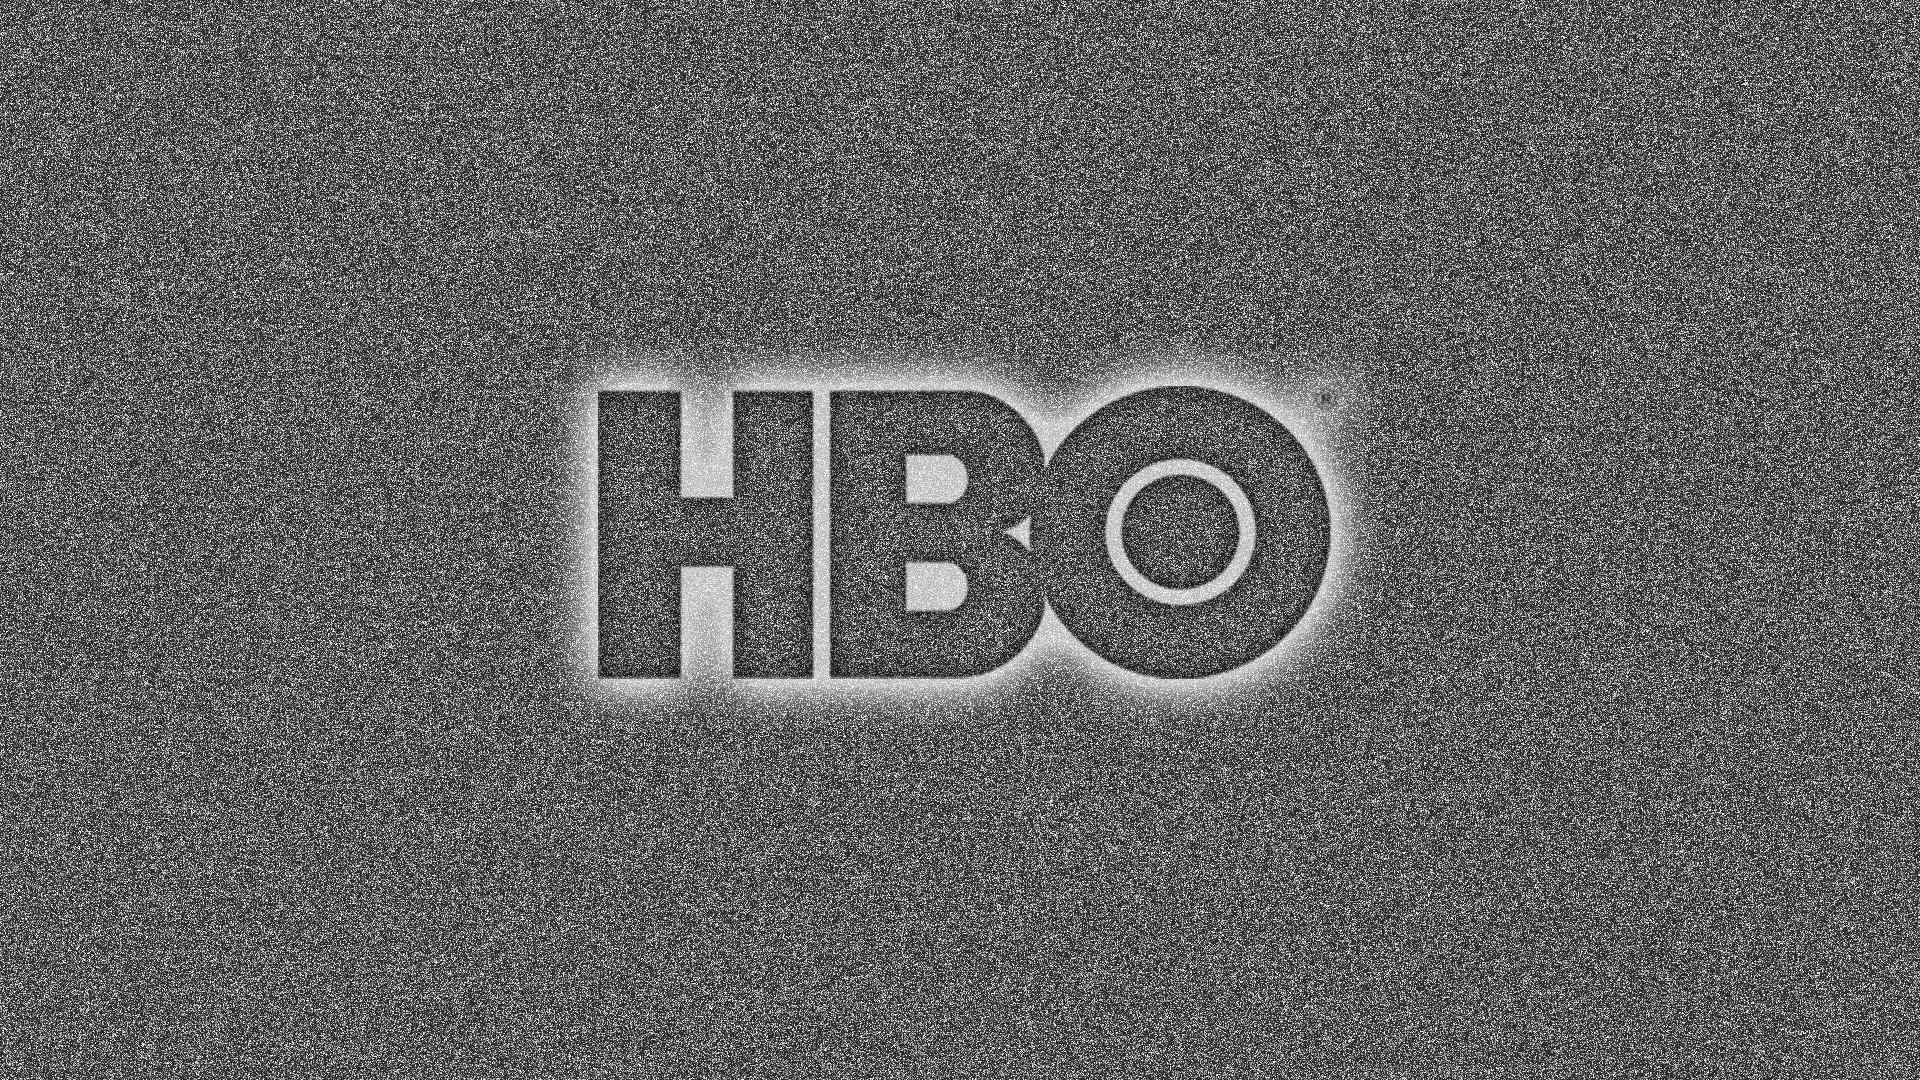 Телекомпания HBO создала должность координатора интимных сцен - фото 1